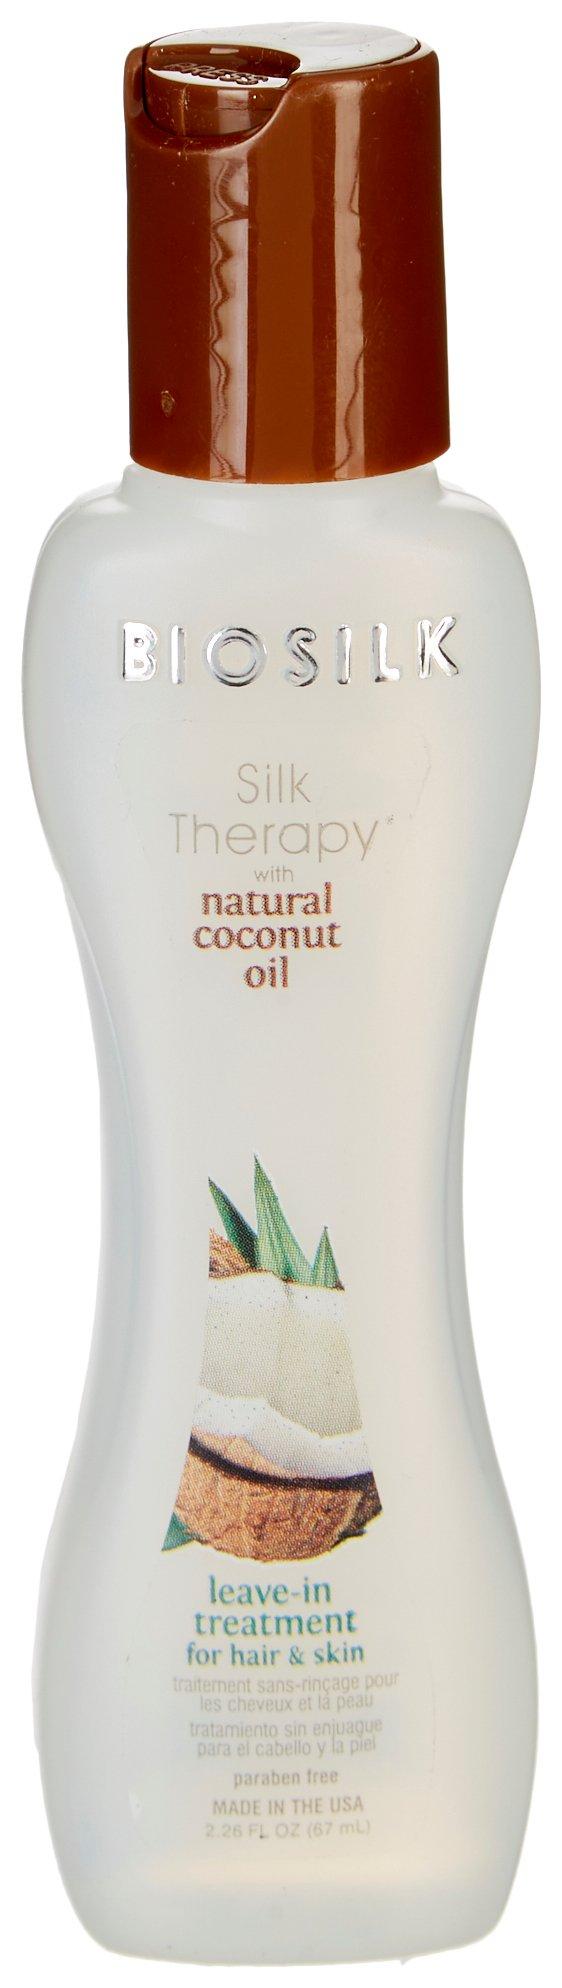 BioSilk Silk Therapy Coconut Leave-In Treatment 2.26 fl.oz.